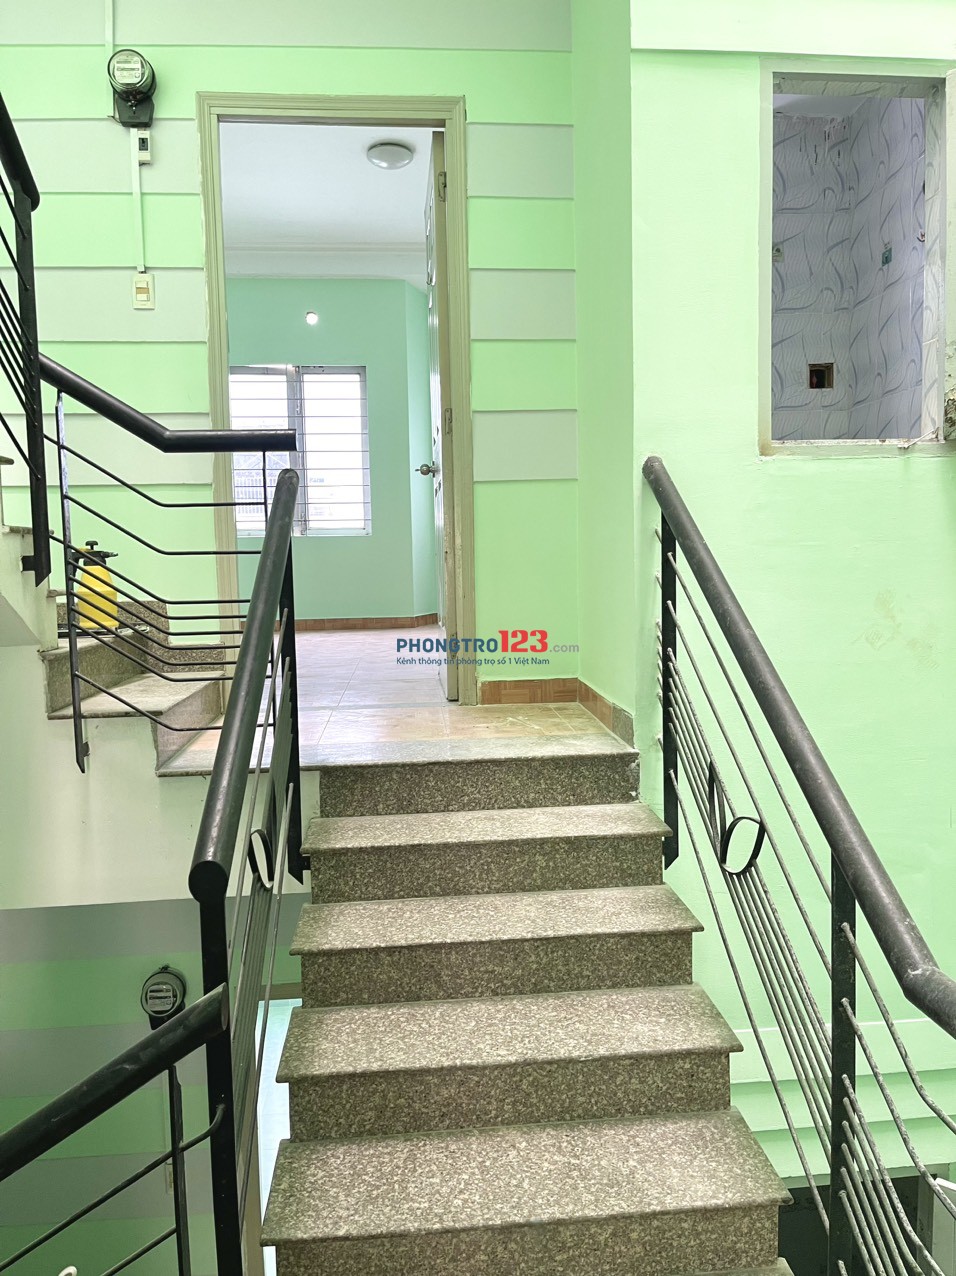 Cho thuê RẺ phòng đẹp máy lạnh đường Tân Sơn Nhì mới xây dựng ( Giảm 500k (